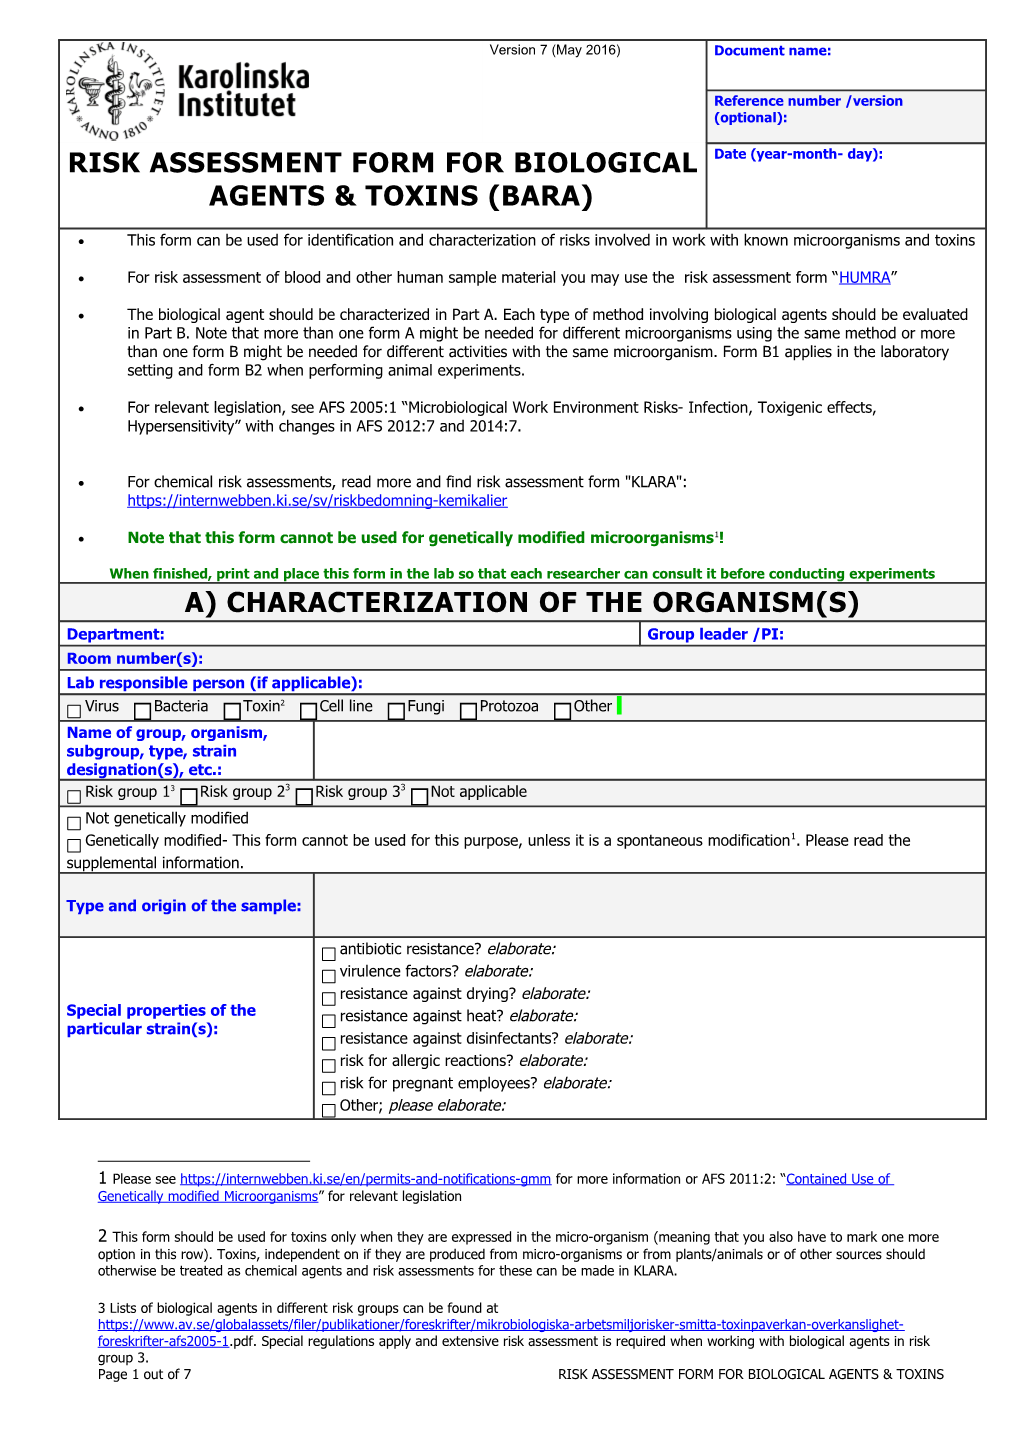 Risk Assessment Form for Biological Agents & Toxins (BARA)